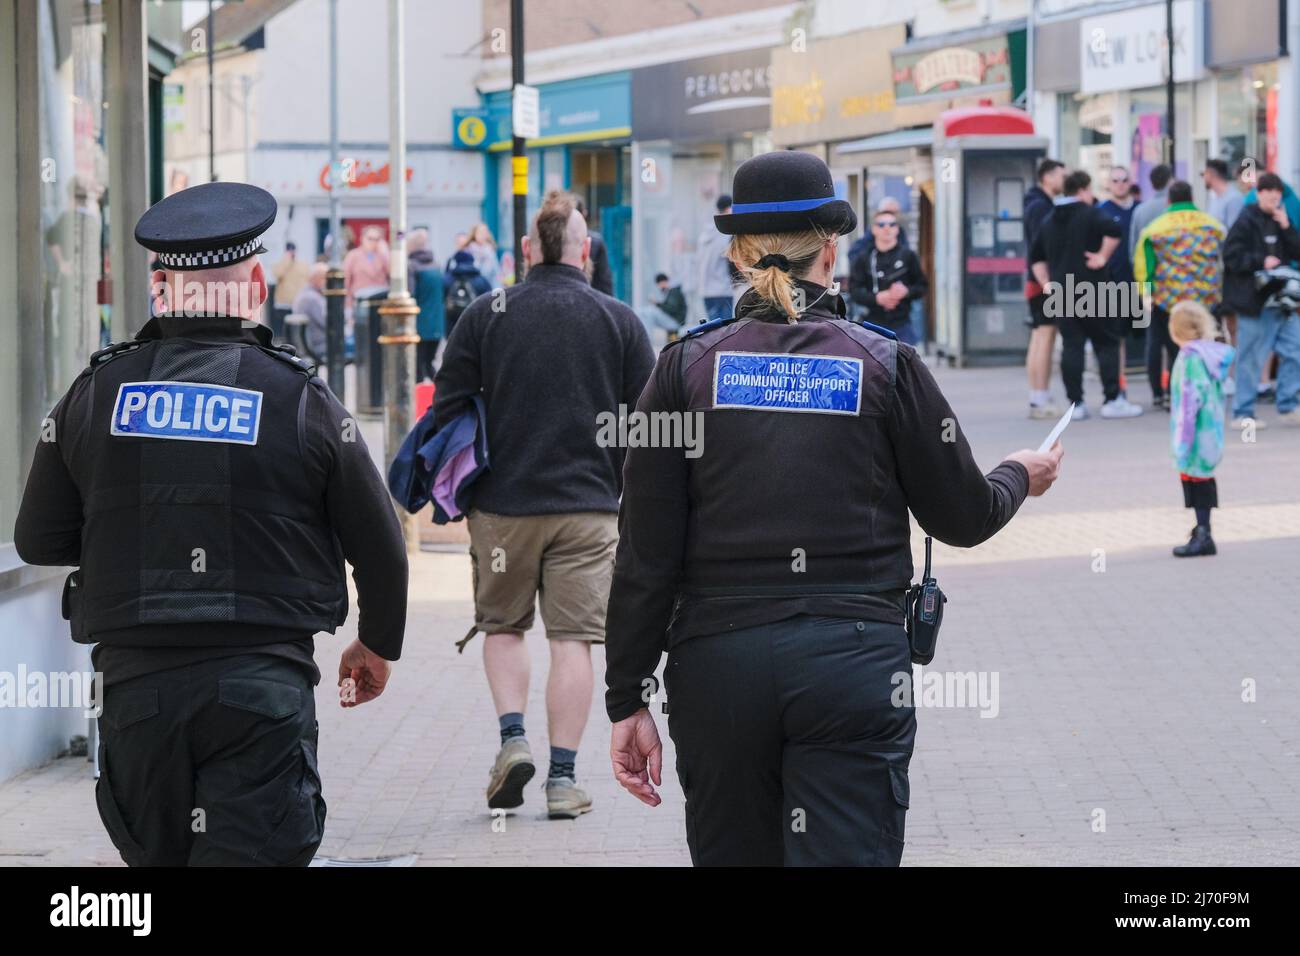 Un establo de policía y un oficial de apoyo comunitario de policía que camina por el centro de Newquay Town en Cornwall en el Reino Unido. Foto de stock